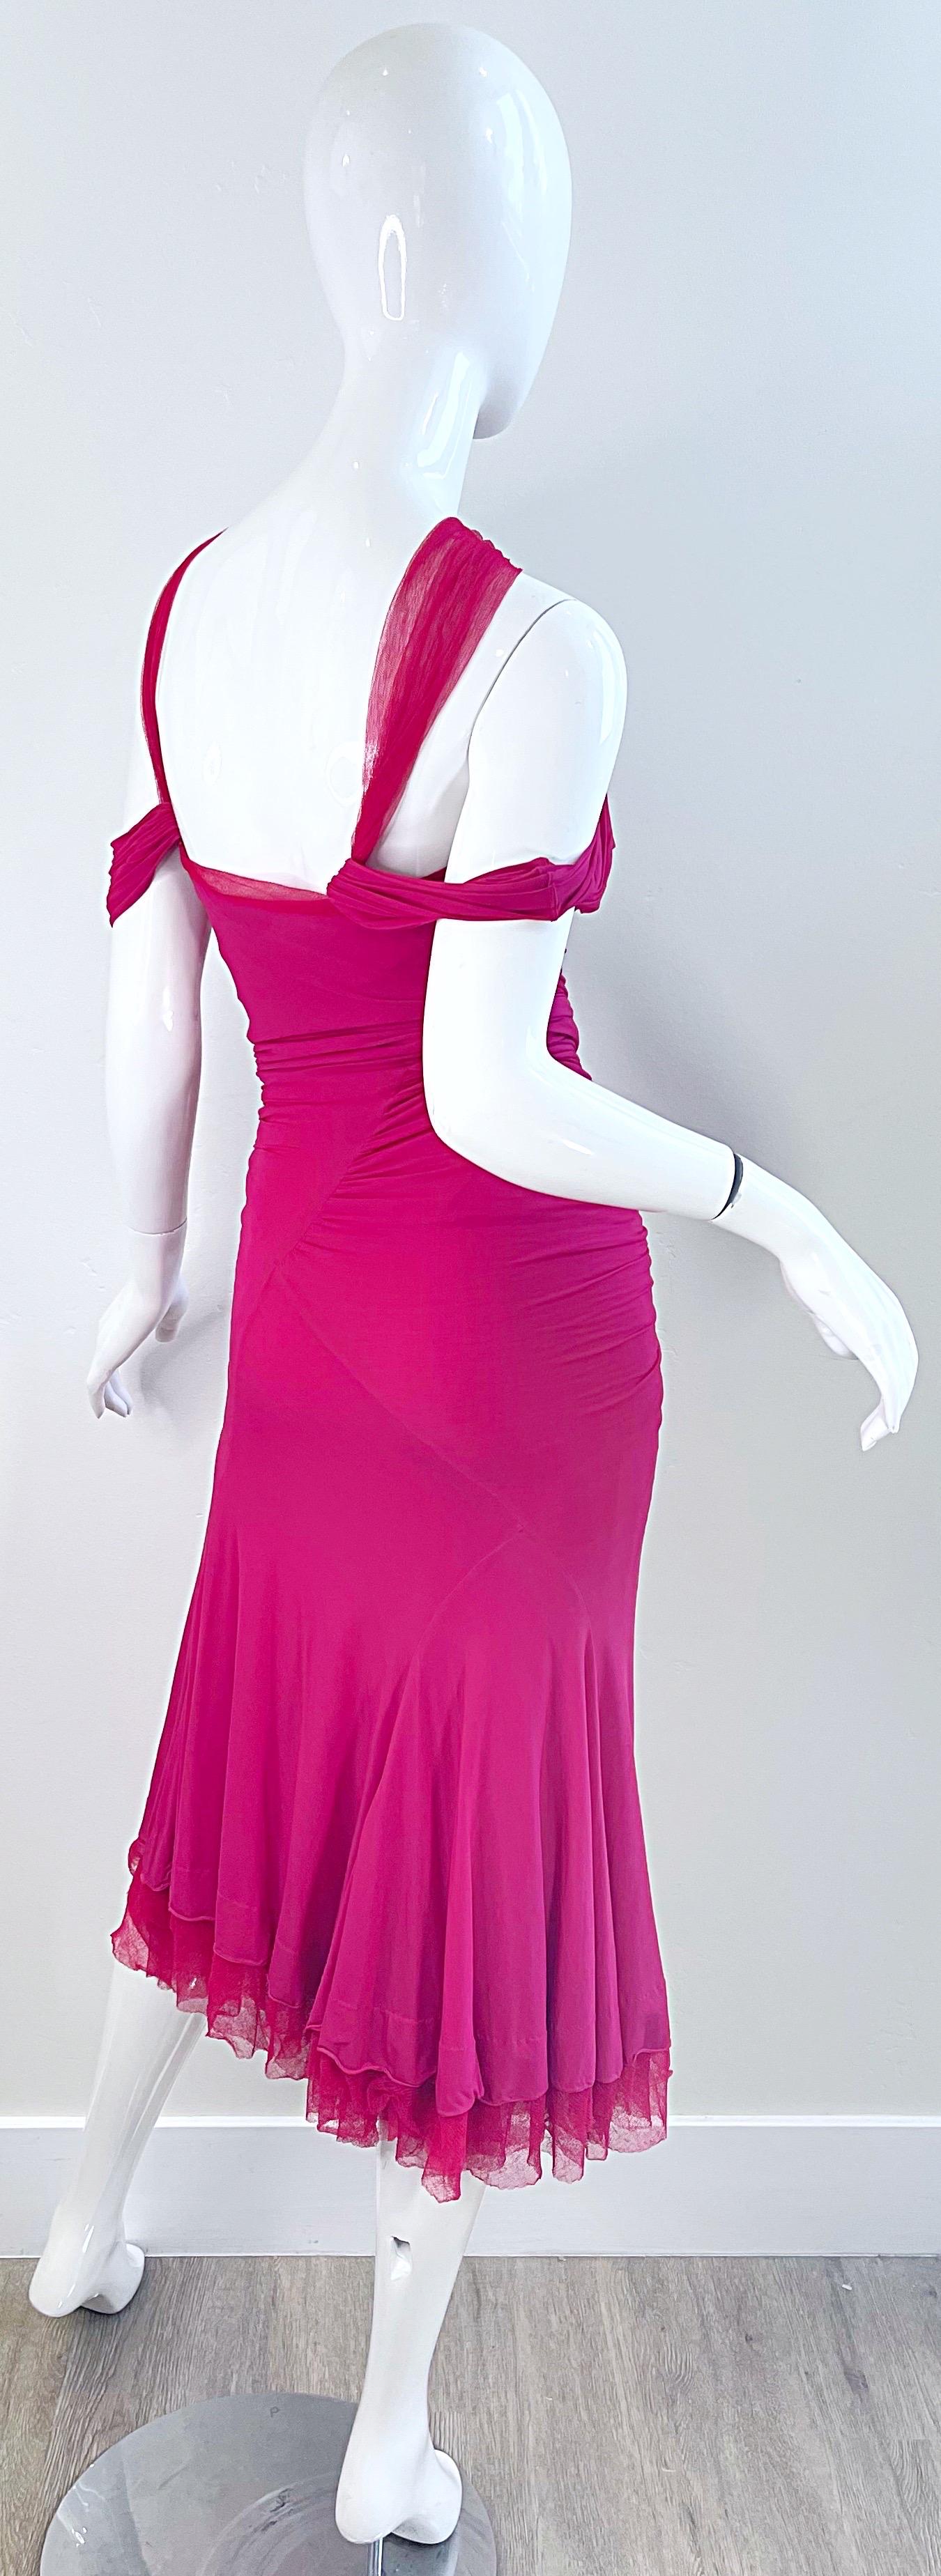 Donna Karan Runway Fall 2004 Hot Pink Off Shoulder Vintage Jersey Tulle Dress For Sale 1